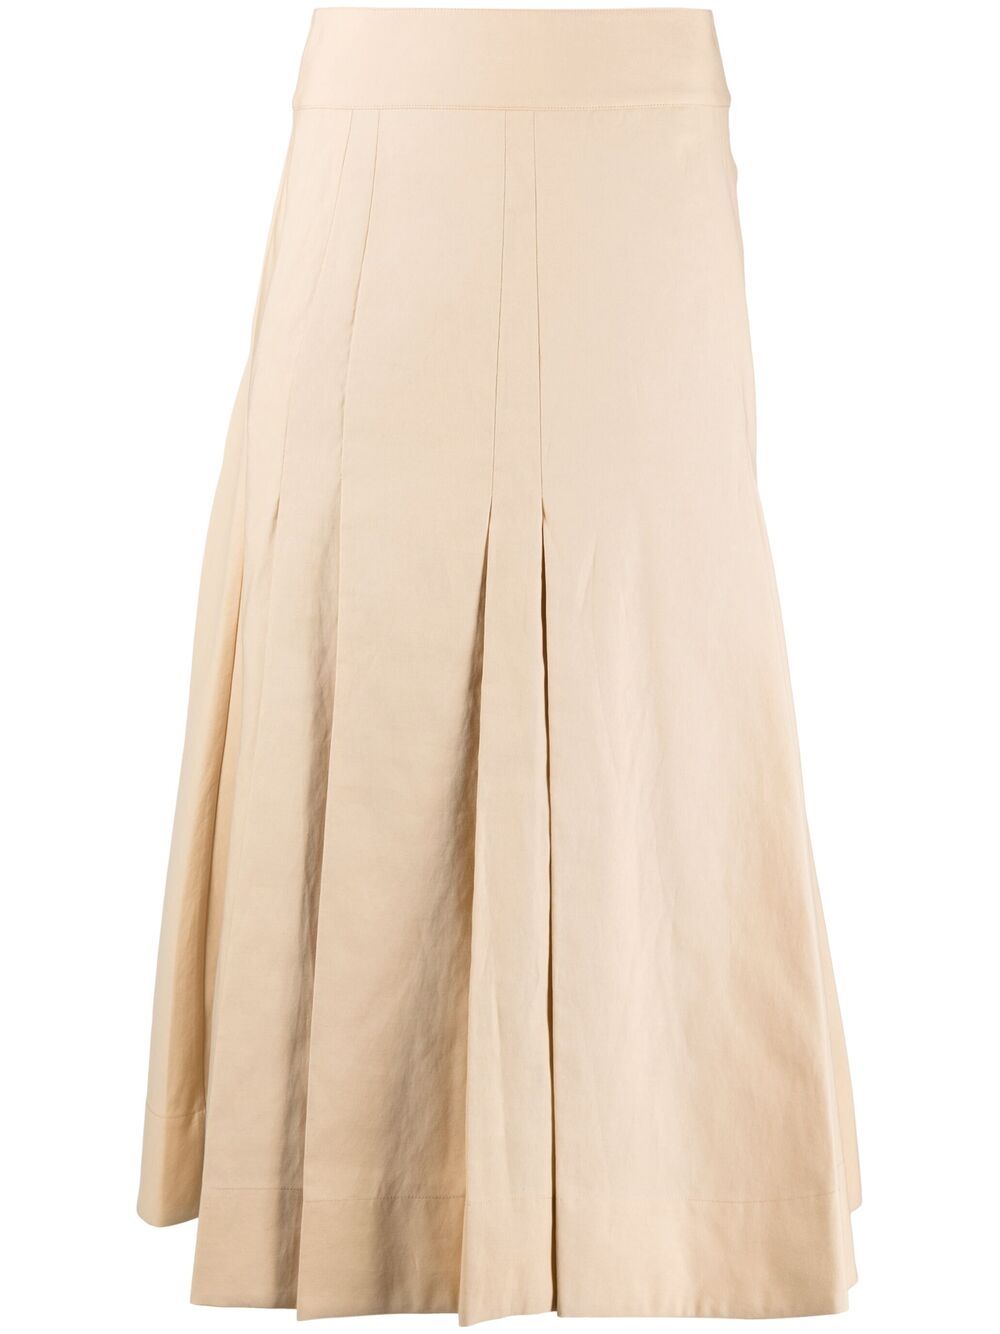 фото 3.1 phillip lim юбка а-силуэта со складками